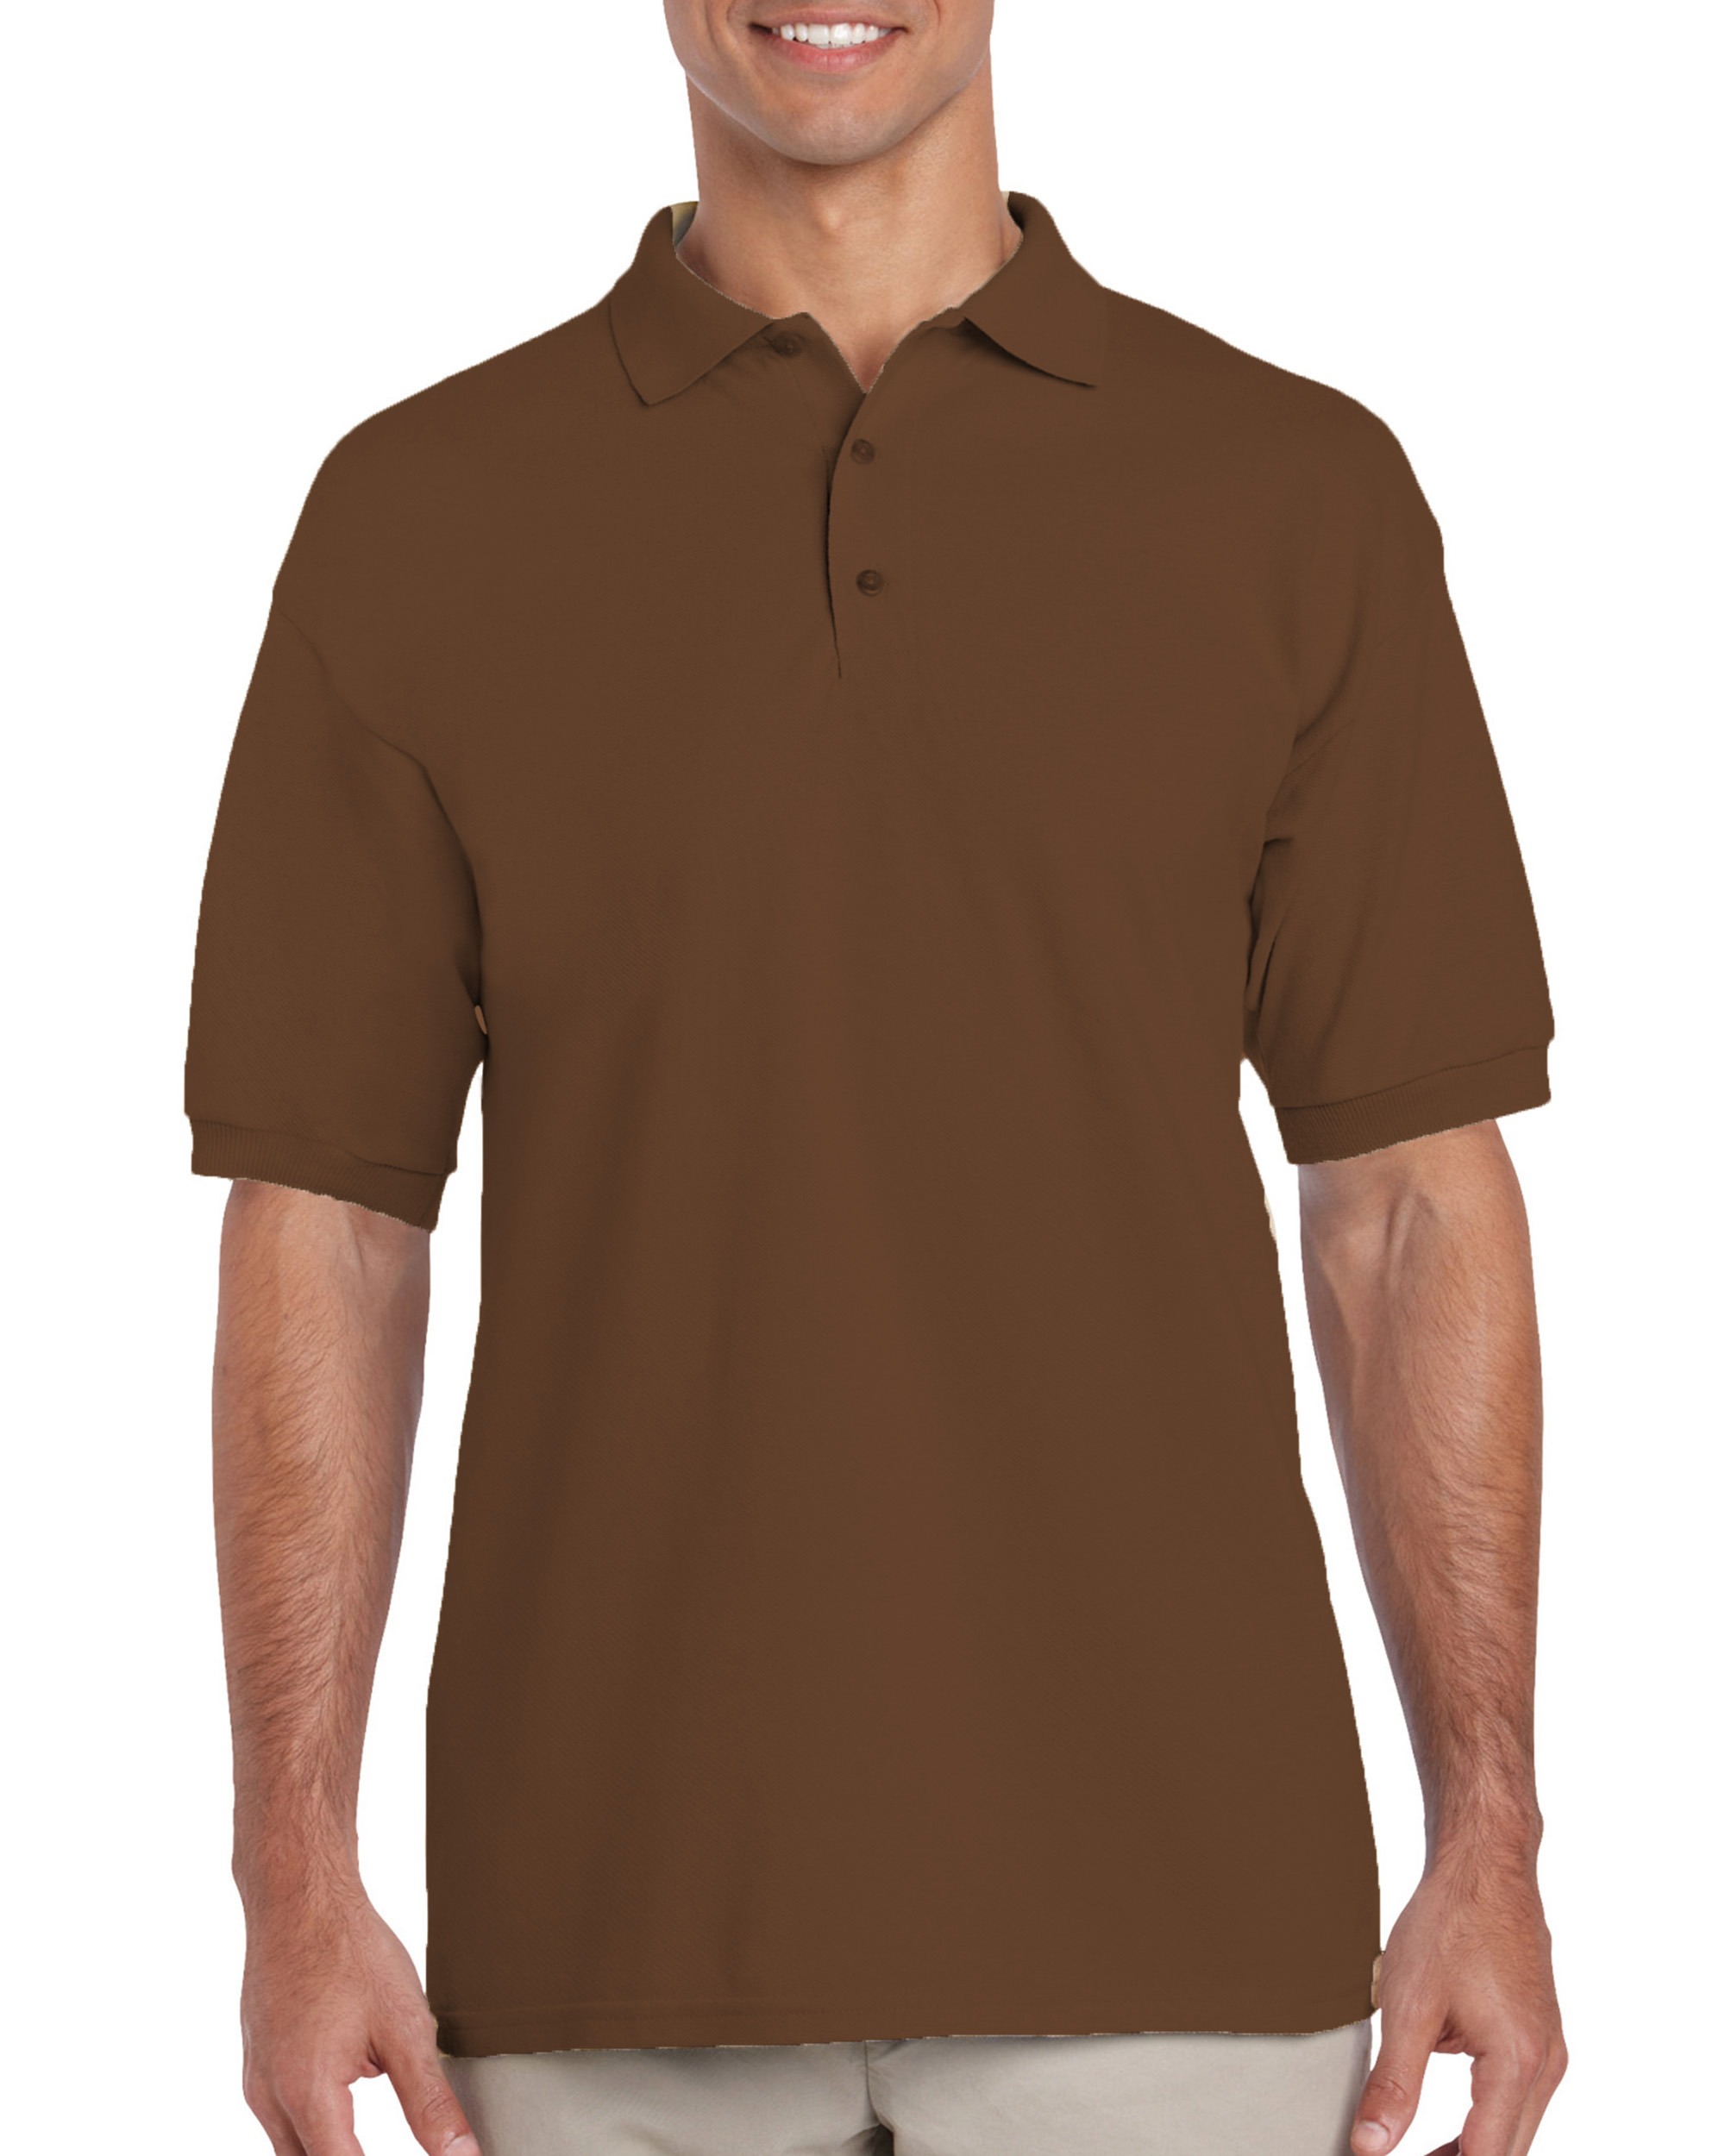 Gildan® 3800 Ultra Cotton® Adult Pique Sport Shirt